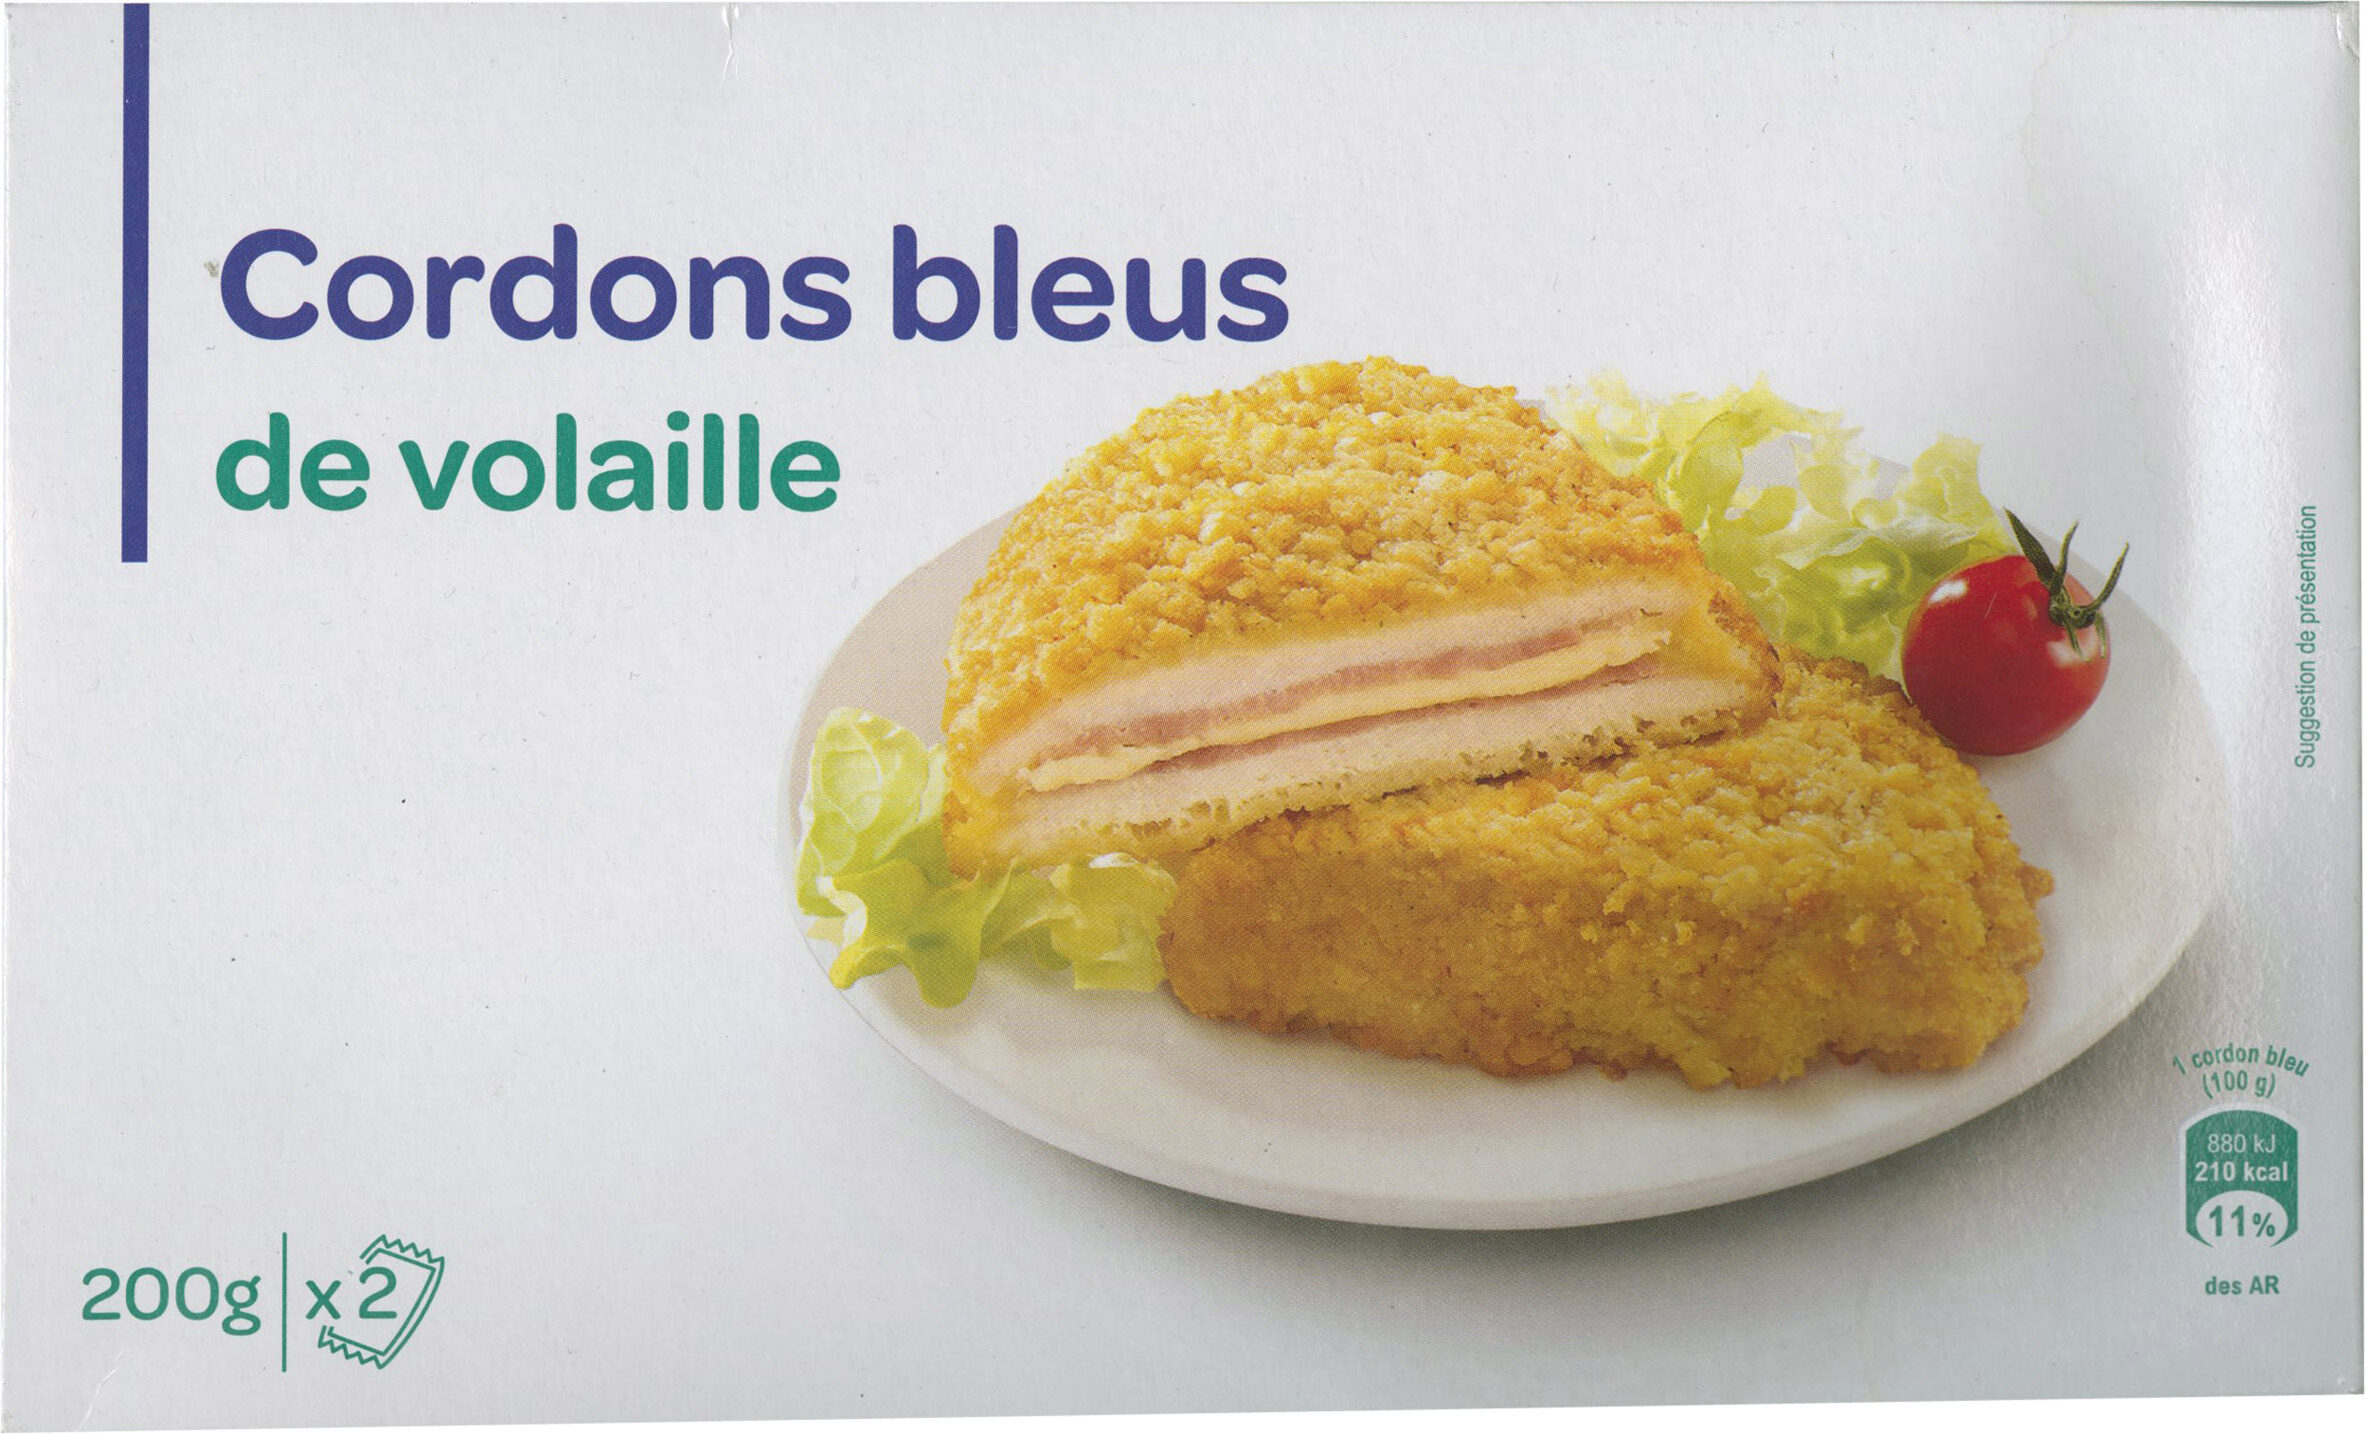 Cordons bleus de volaille - Produkt - fr